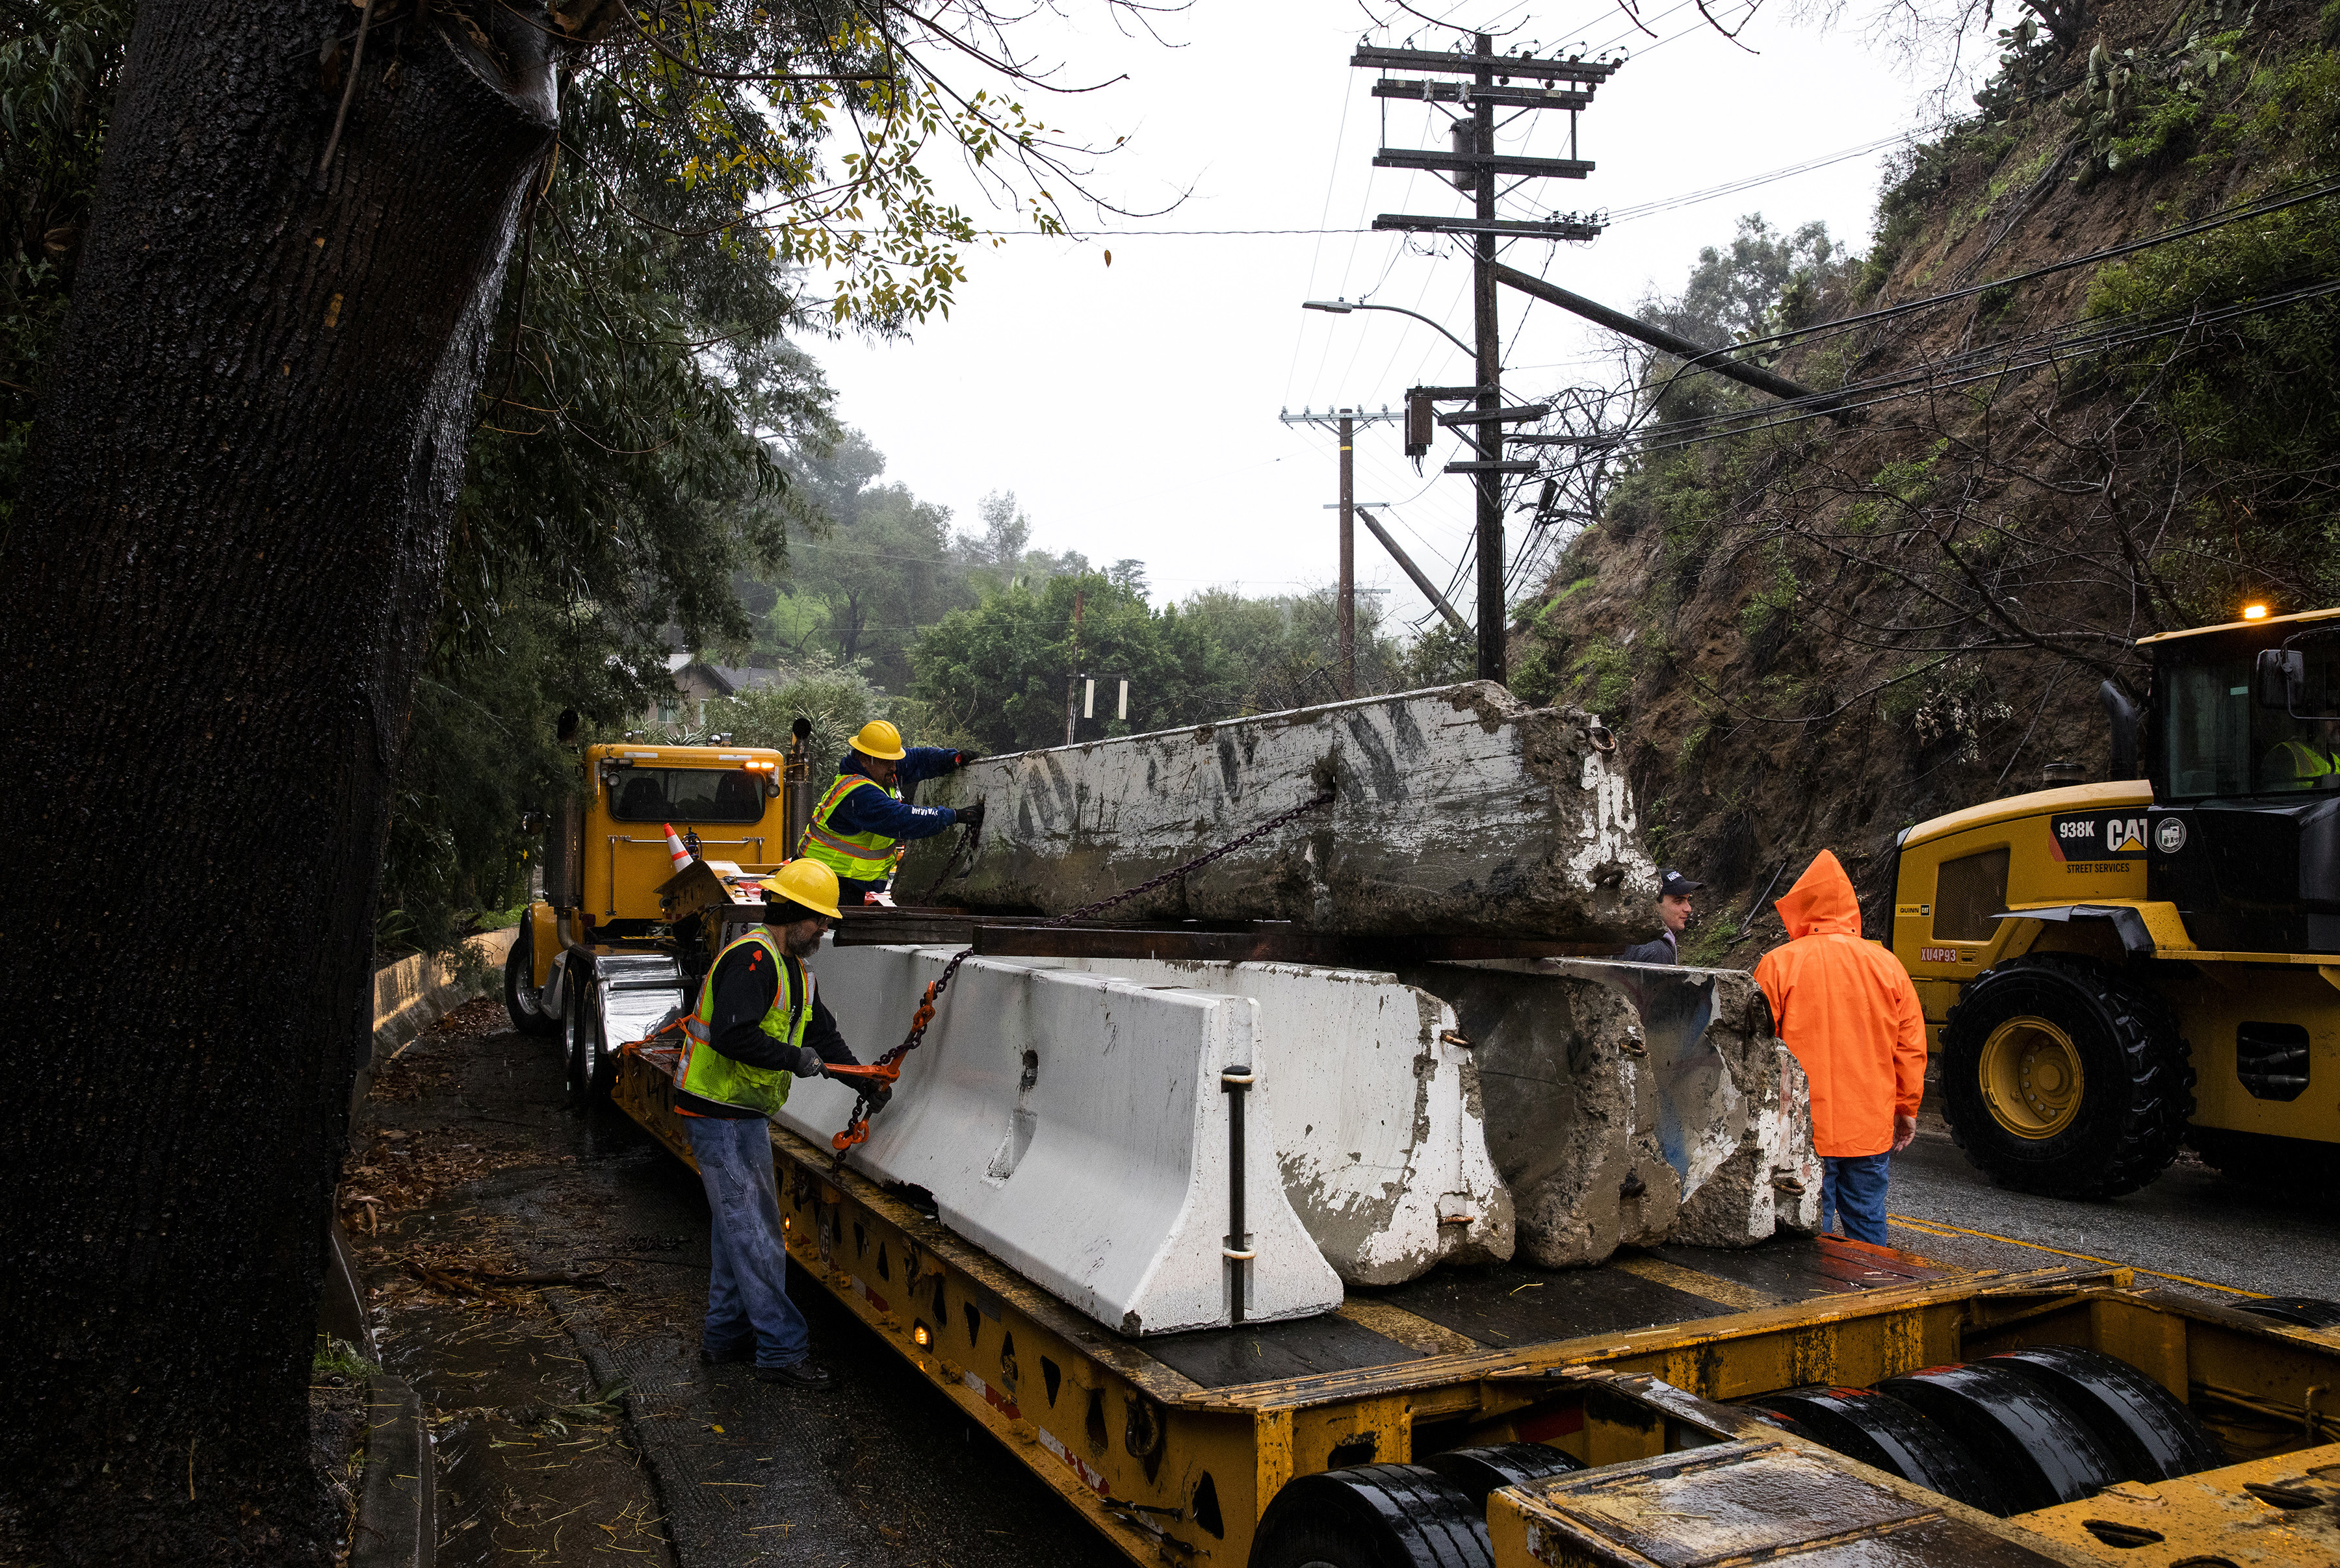 Trabajadores colocan barreras de hormigón para desviar el barro y los escombros de la calzada en Los Ángeles el miércoles 4 de enero de 2023. (Foto Prensa Libre: Alisha Jucevic/The New York Times)